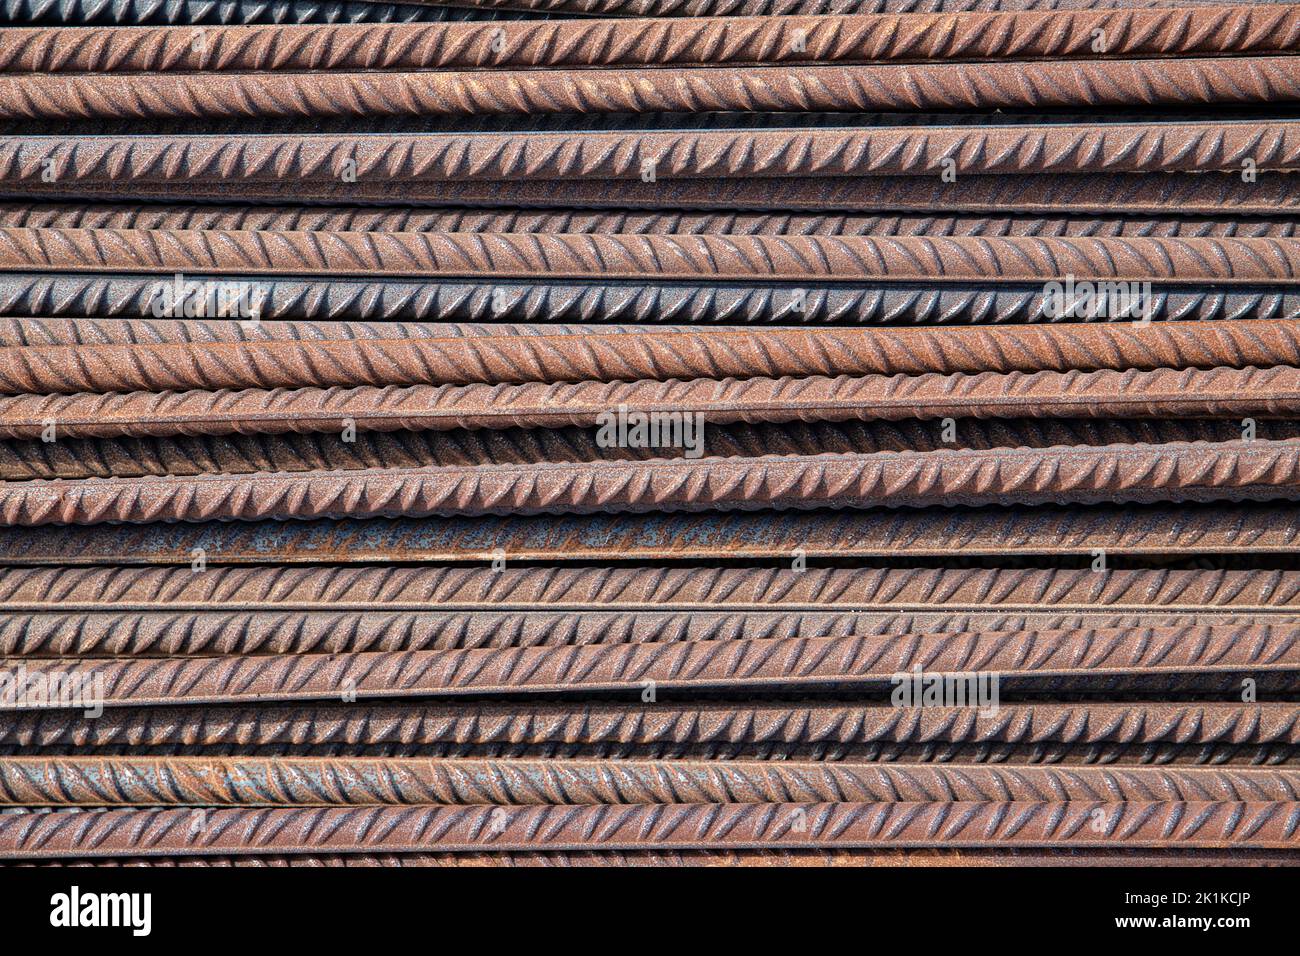 Stapel von Stahlstäben, auch bekannt als Riegel, als Baumaterial in Betonbetonarbeiten oder Mauerwerk verwendet, Nahaufnahme der rostigen Stäbe Stockfoto